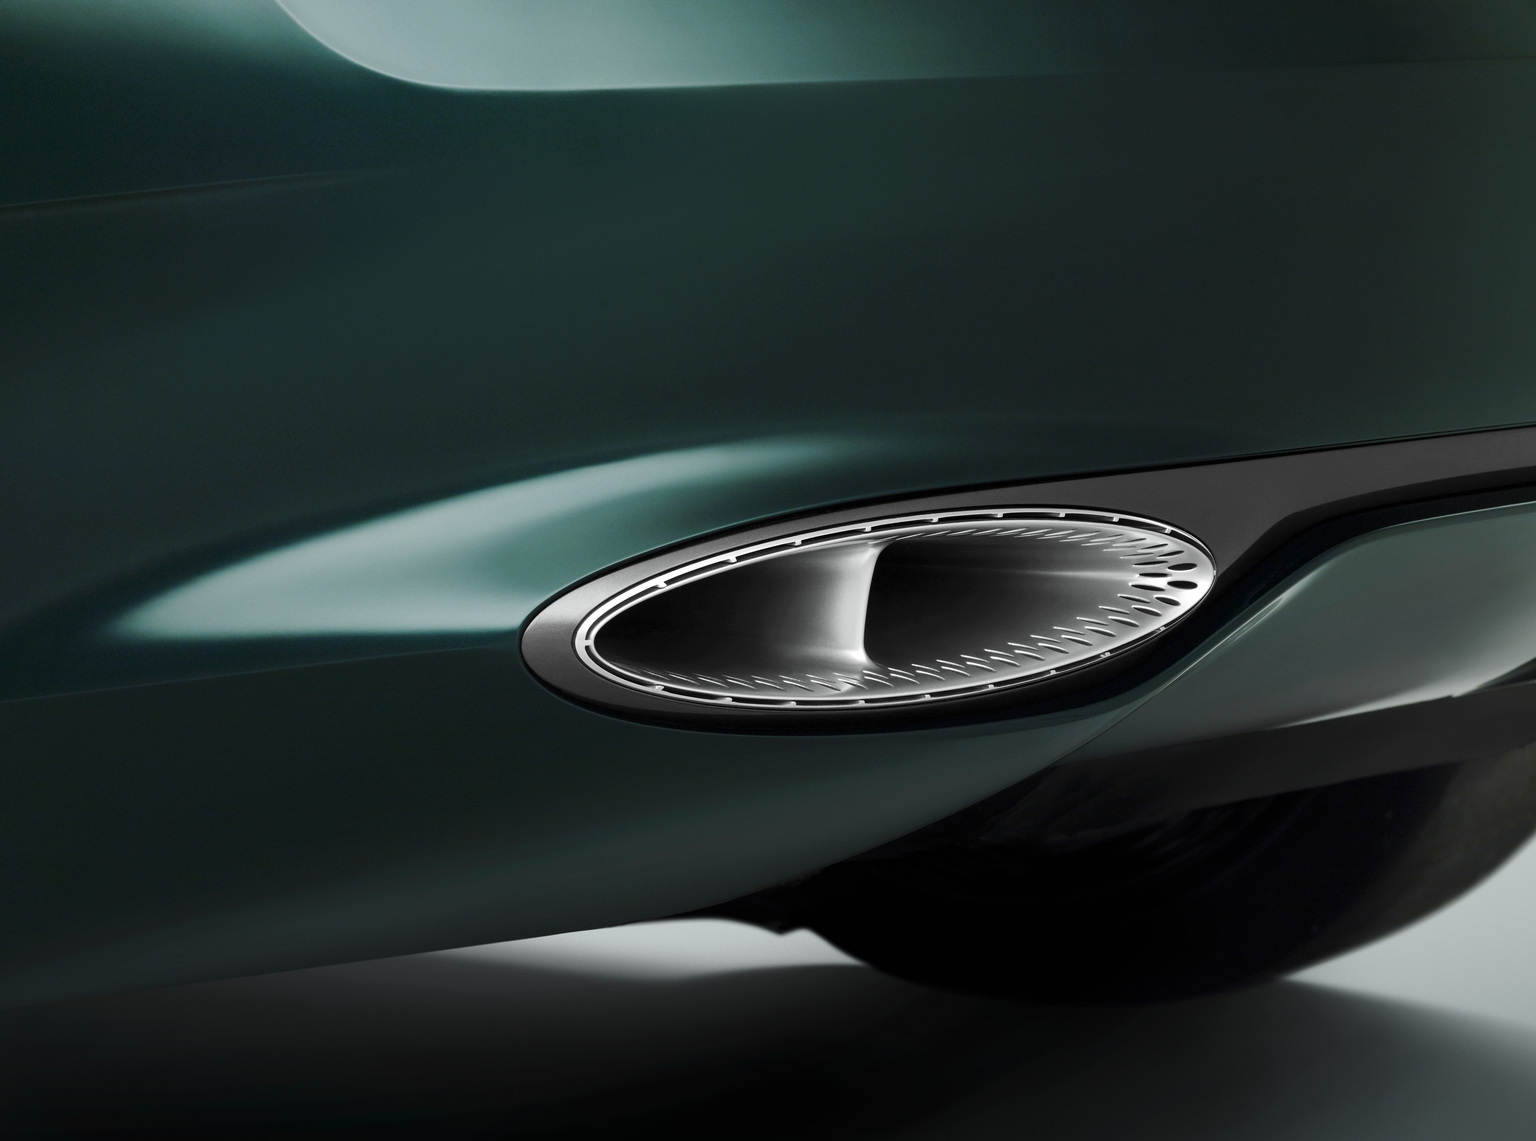 2015 Bentley EXP 10 Speed 6